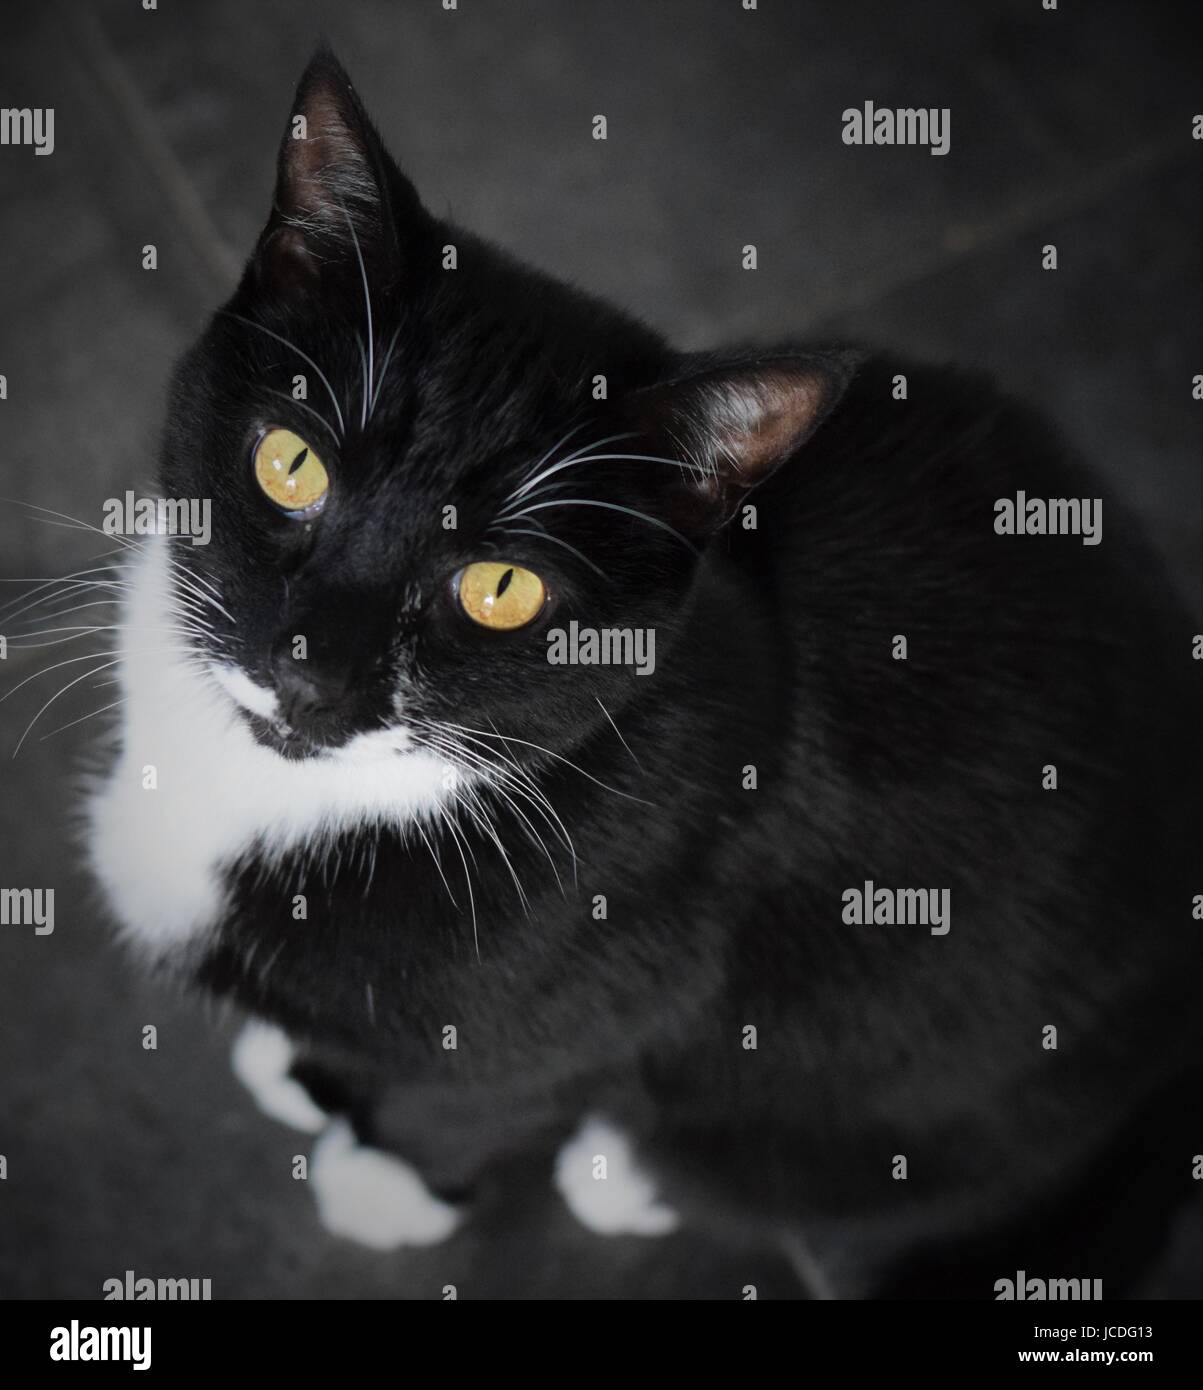 Retrato de un gato negro con ojos amarillos y esmoquin marcas Foto de stock